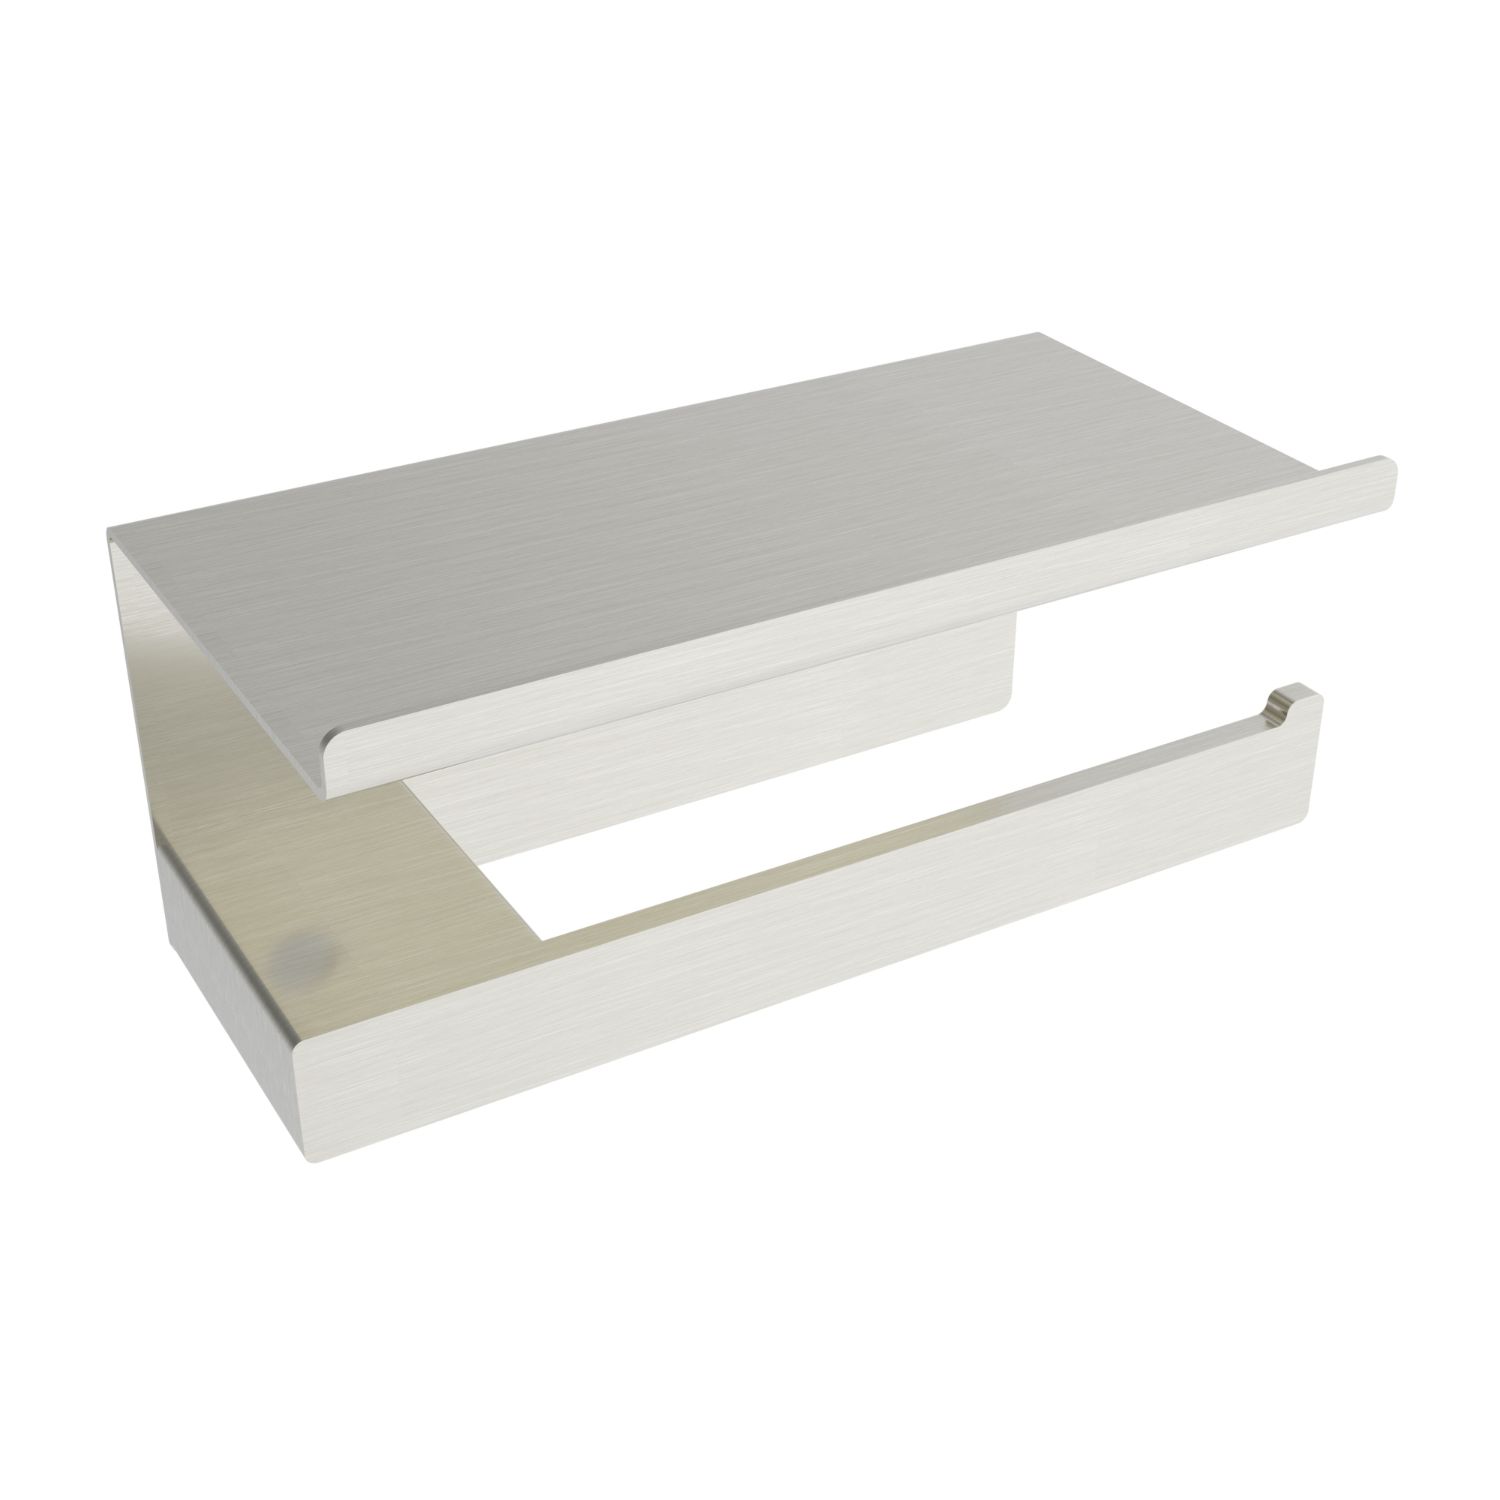 ICO Bath V3054 Cinder Toilet Paper Holder With Shelf - Brushed Nickel